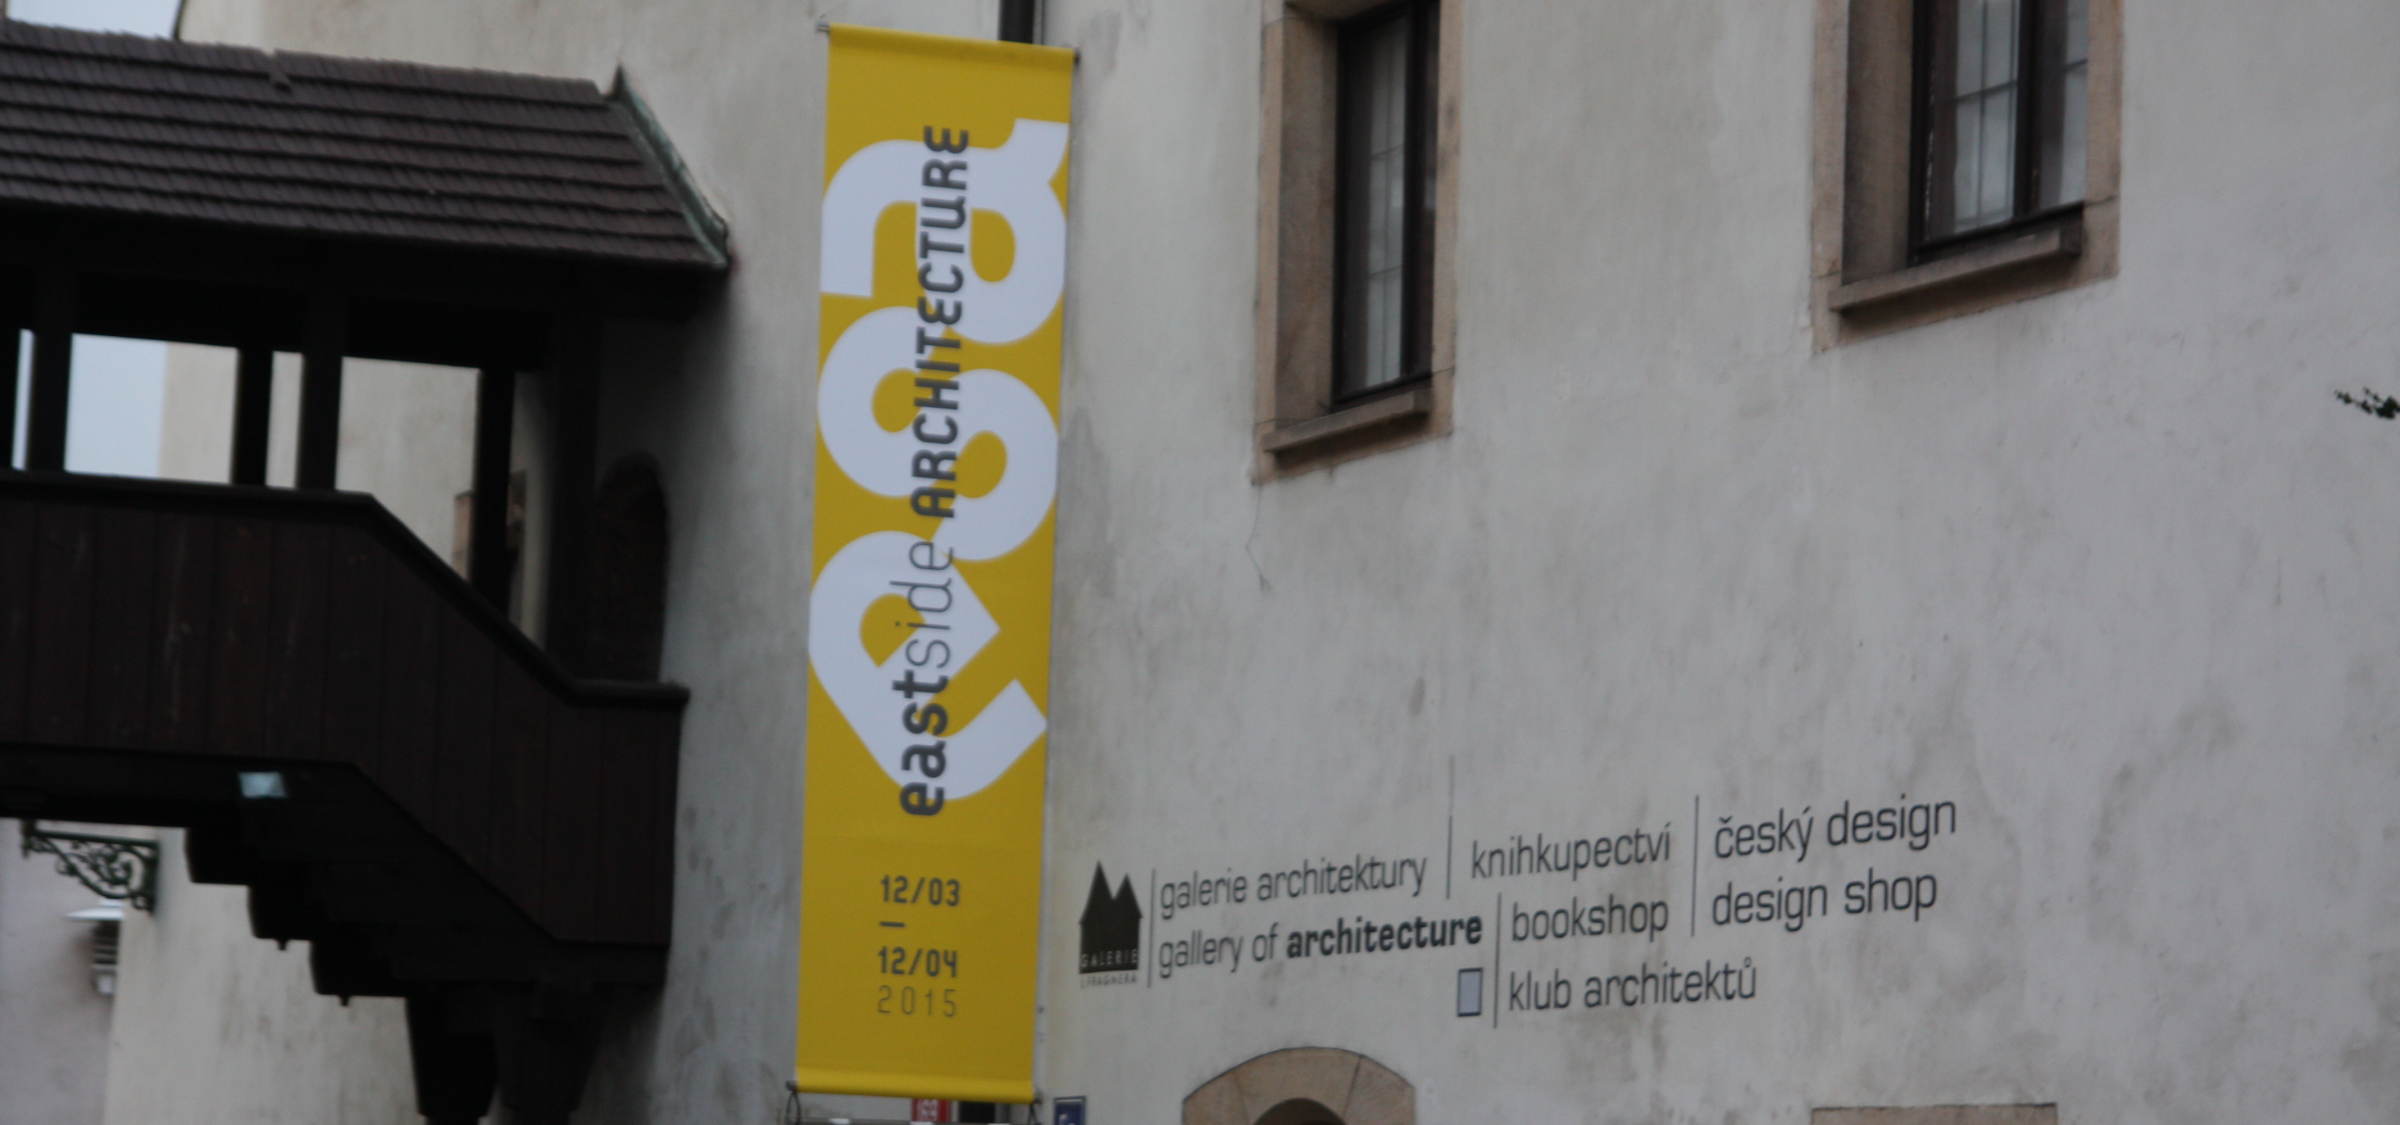 Photoreport from exhibition in Prague | News | Atrium Architekti